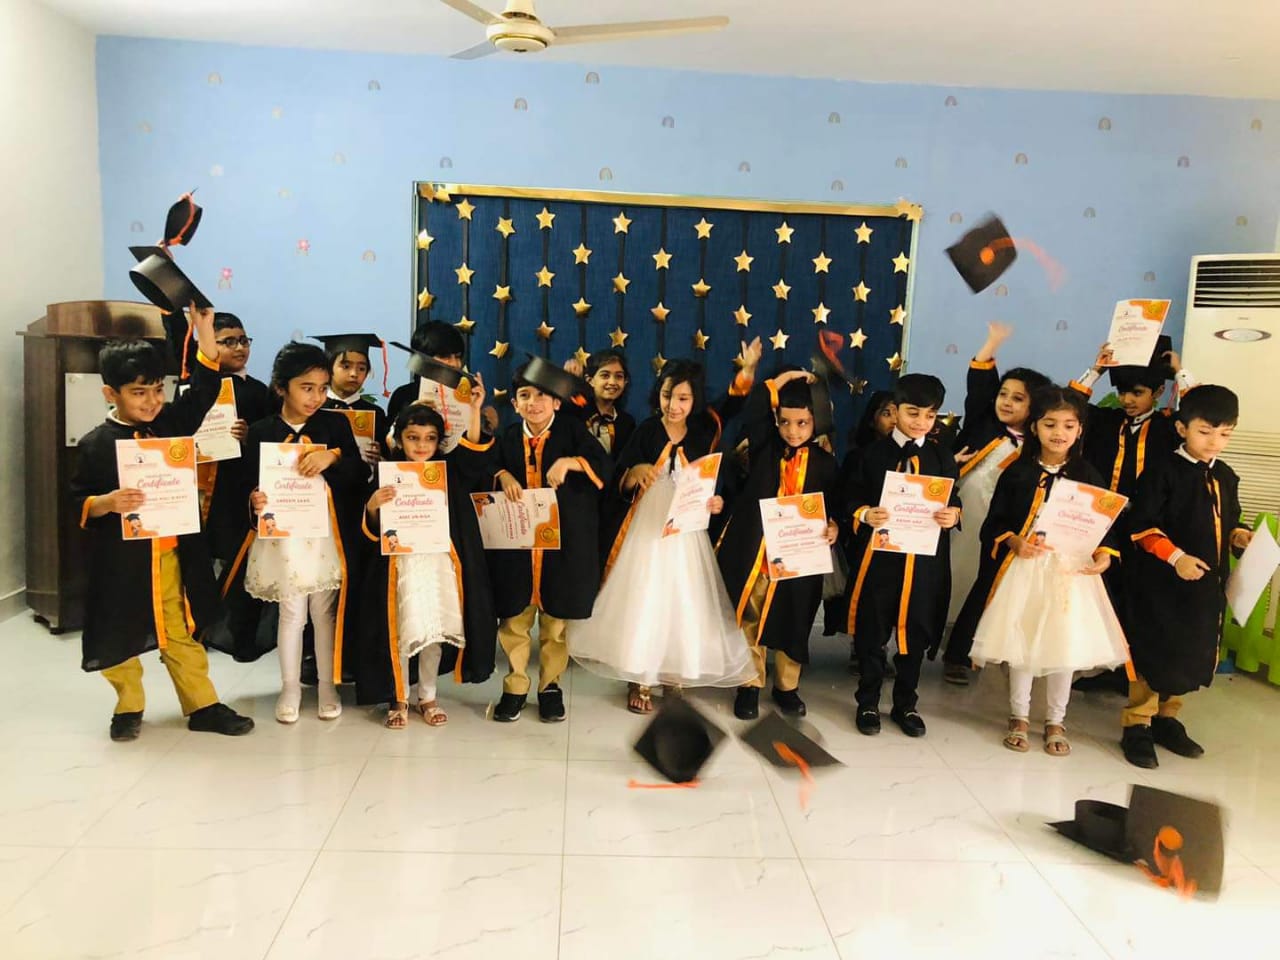 The children are celebrating their achievements of Kindergarten Graduation